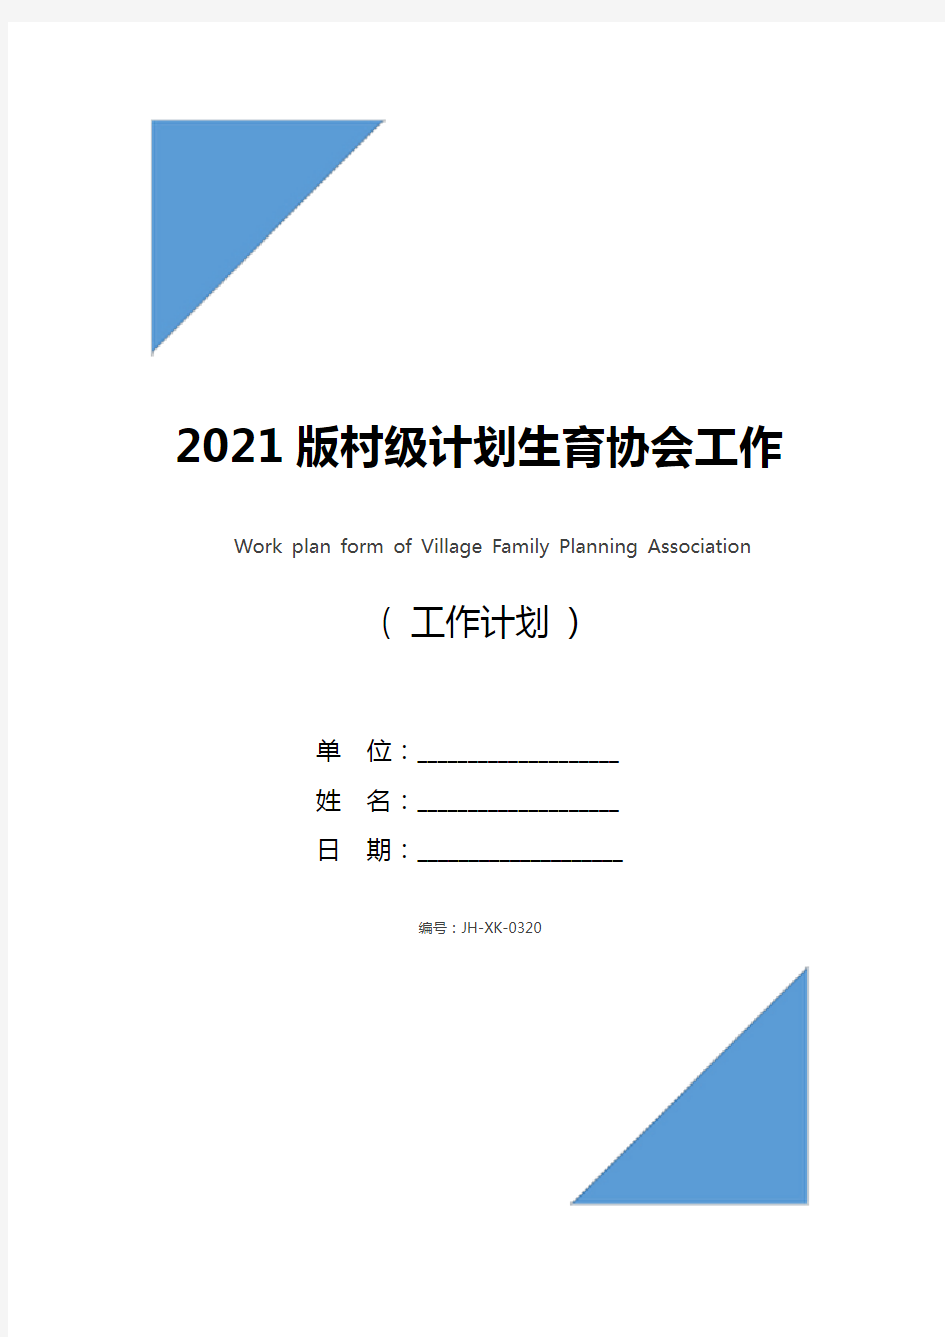 2021版村级计划生育协会工作计划表格